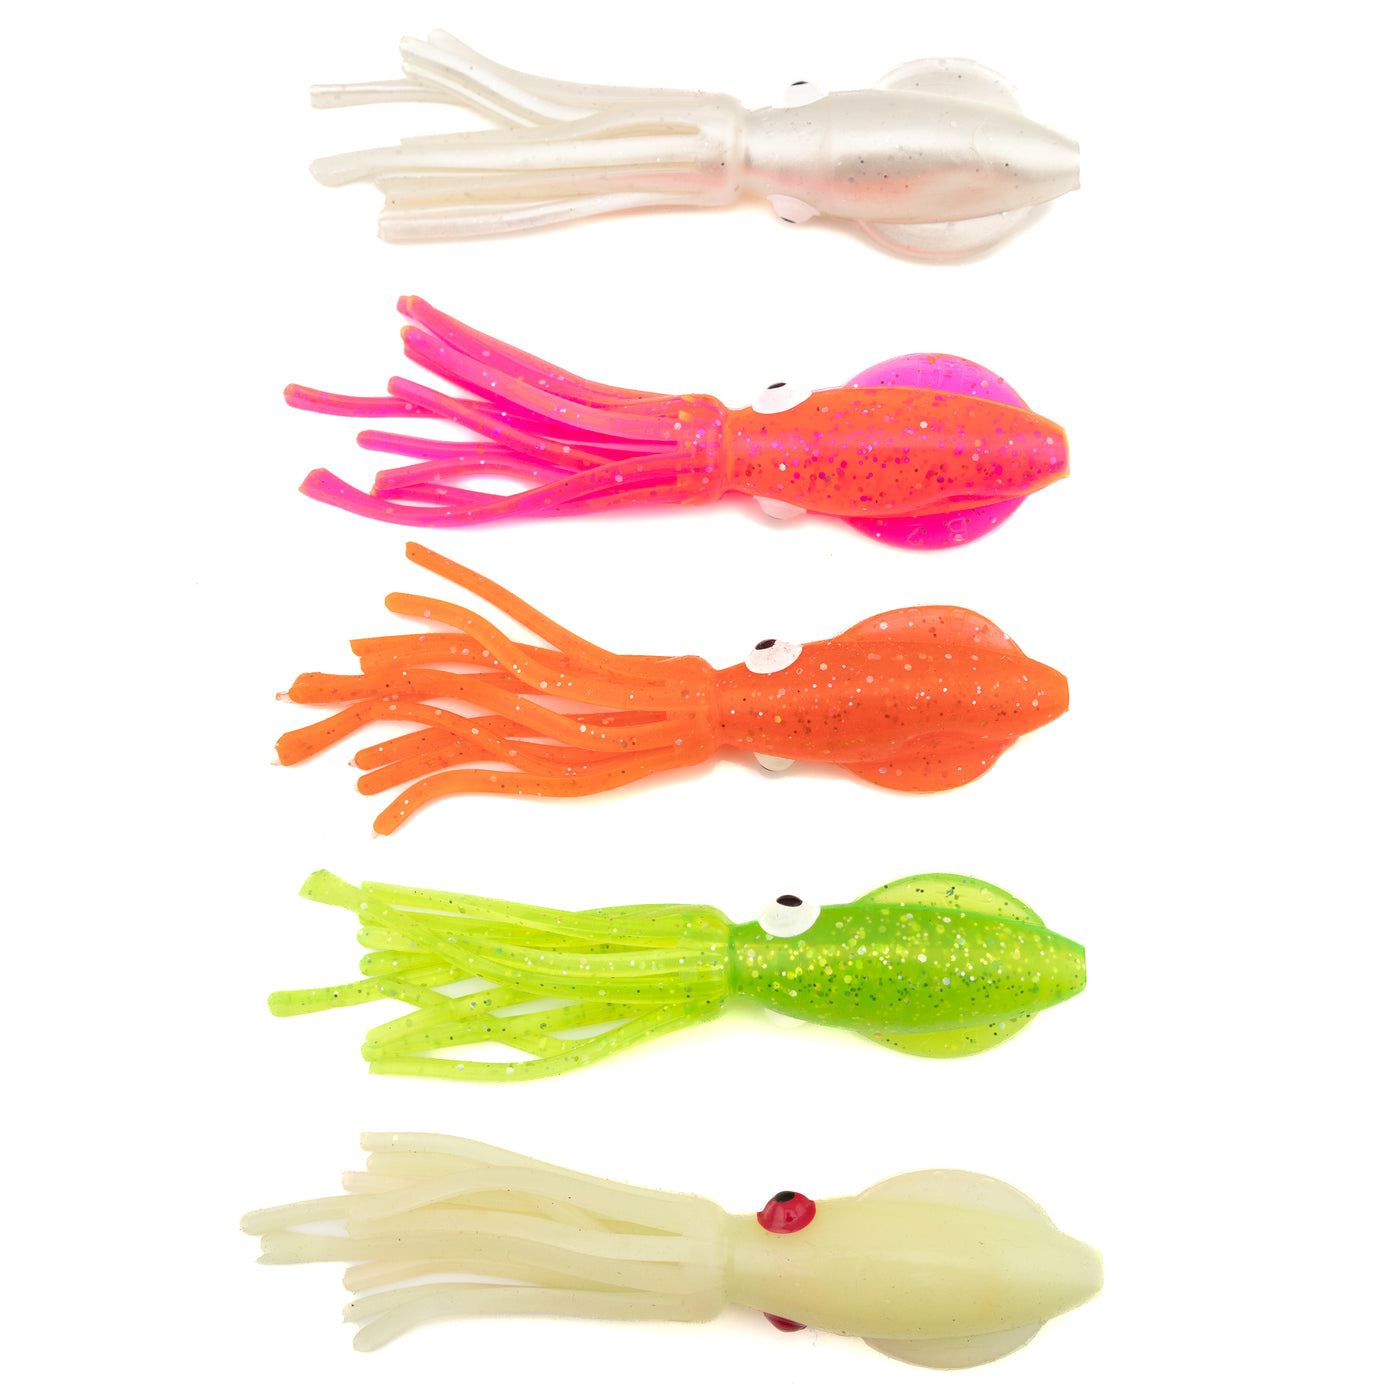 Soft plastic bait for fishing octopus, squid, multicolor